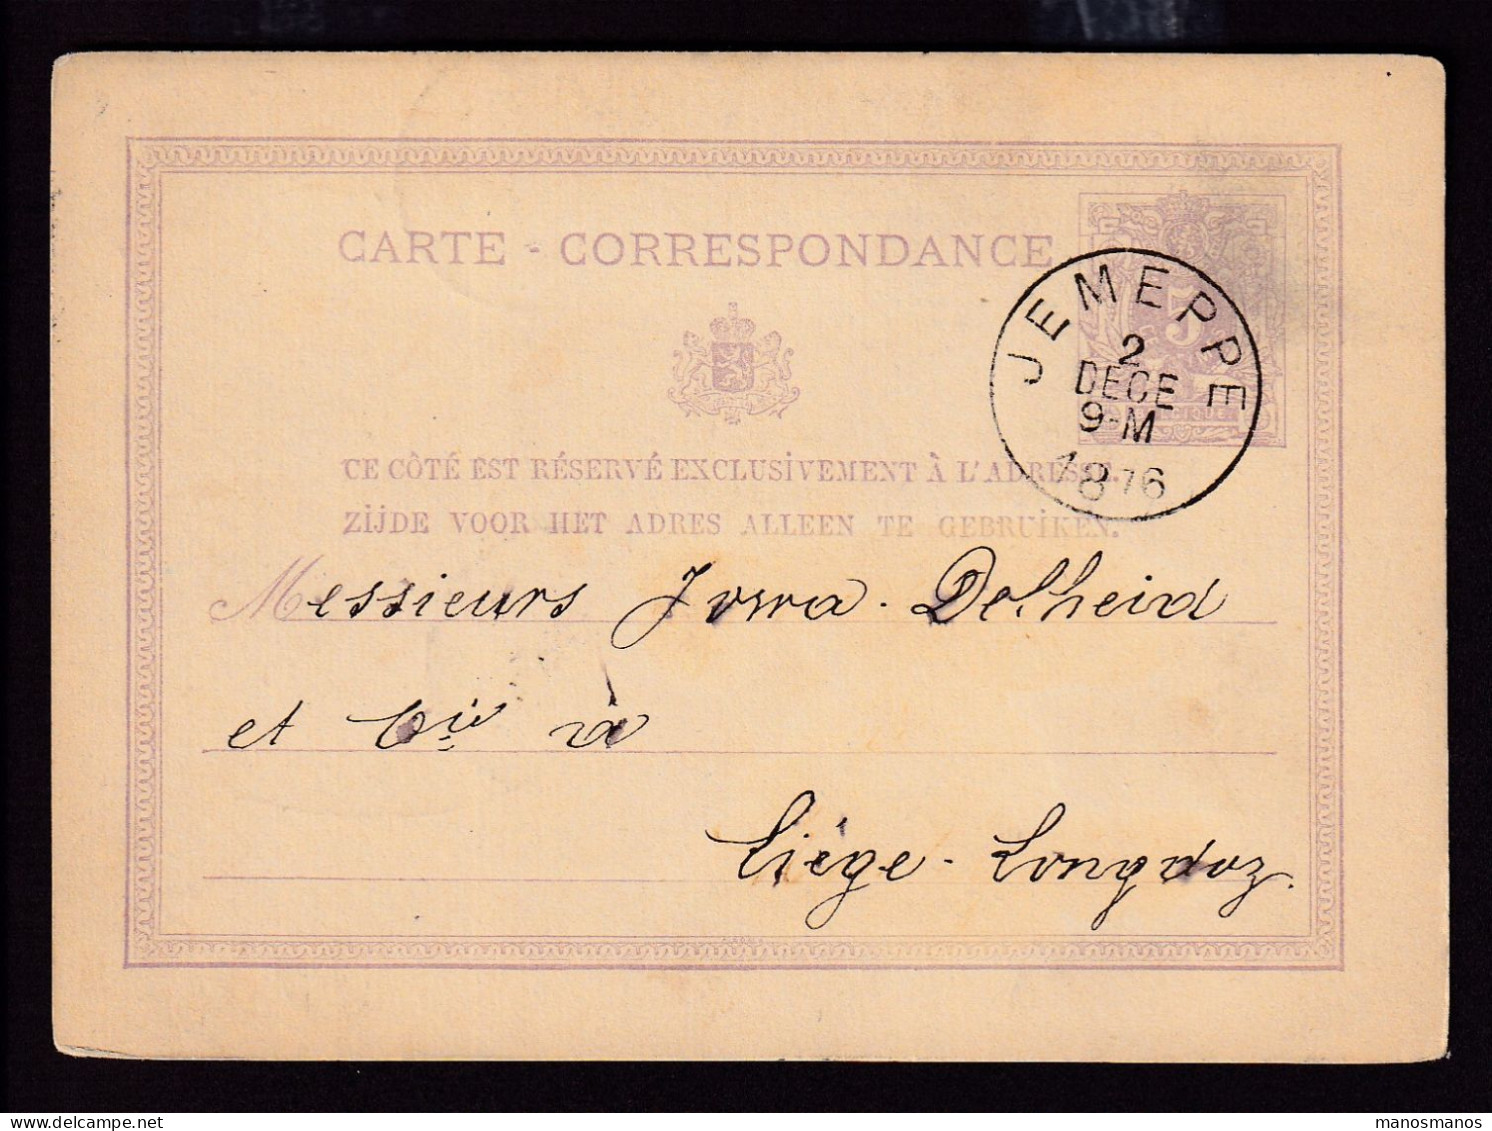 DDFF 531 - Entier Lion Couché JEMEPPE 1876 - Cachet Braconnier Frères Et Soeur à TILLEUR - Postkarten 1871-1909